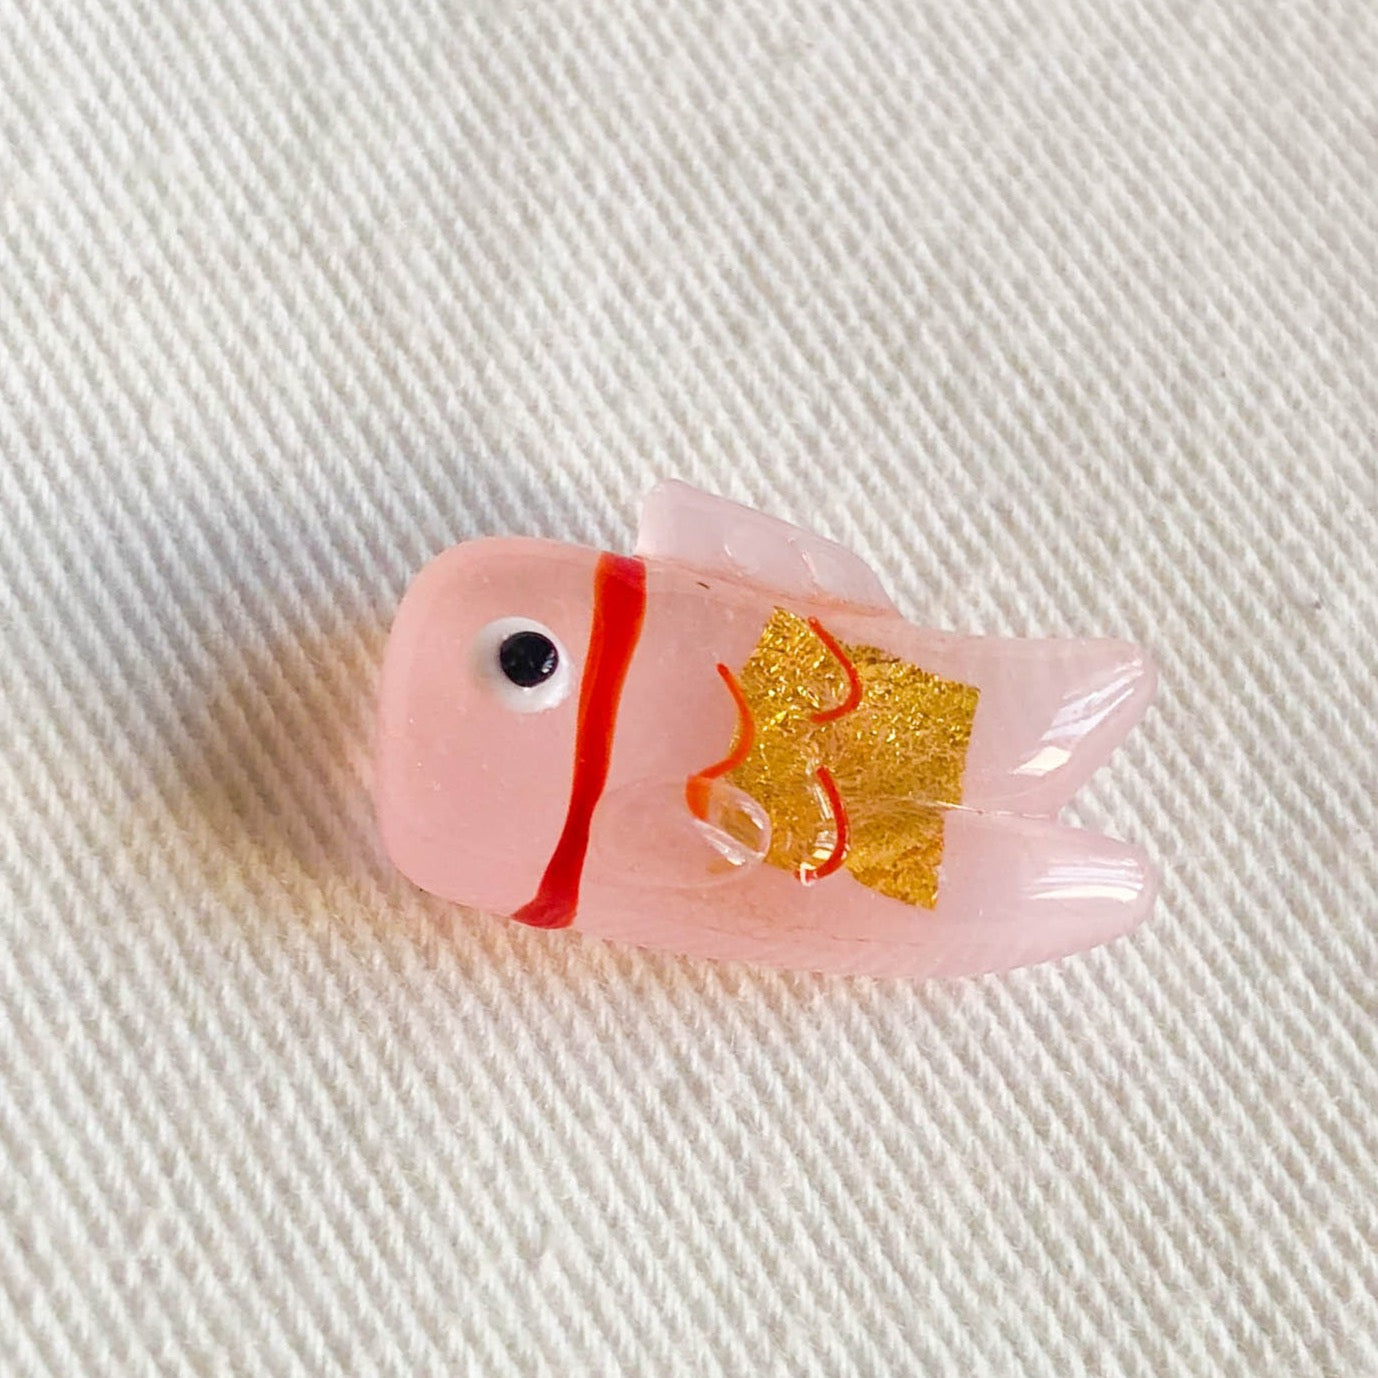 Koinobori Omamori 鯉のぼり